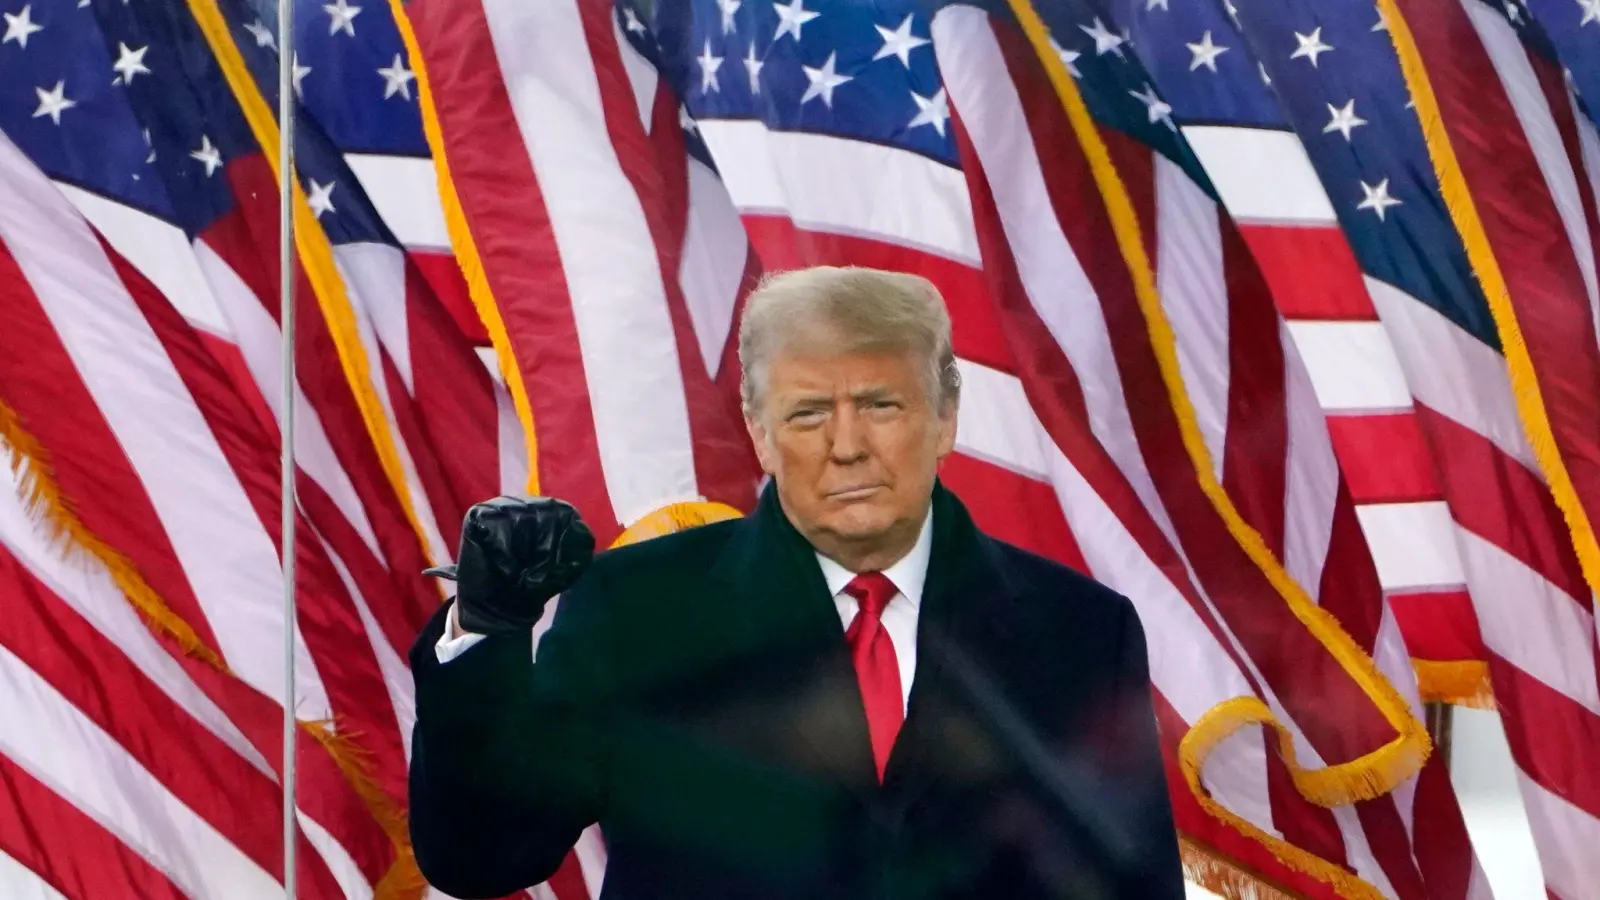 Der damalige US-Präsident Donald Trump spricht  am 6. Januar 2021 bei einer Kundgebung in Washington zu seinen Anhängern - kurz später erfolgt der Sturm auf das Kapitol. (Foto: Jacquelyn Martin/AP/dpa)